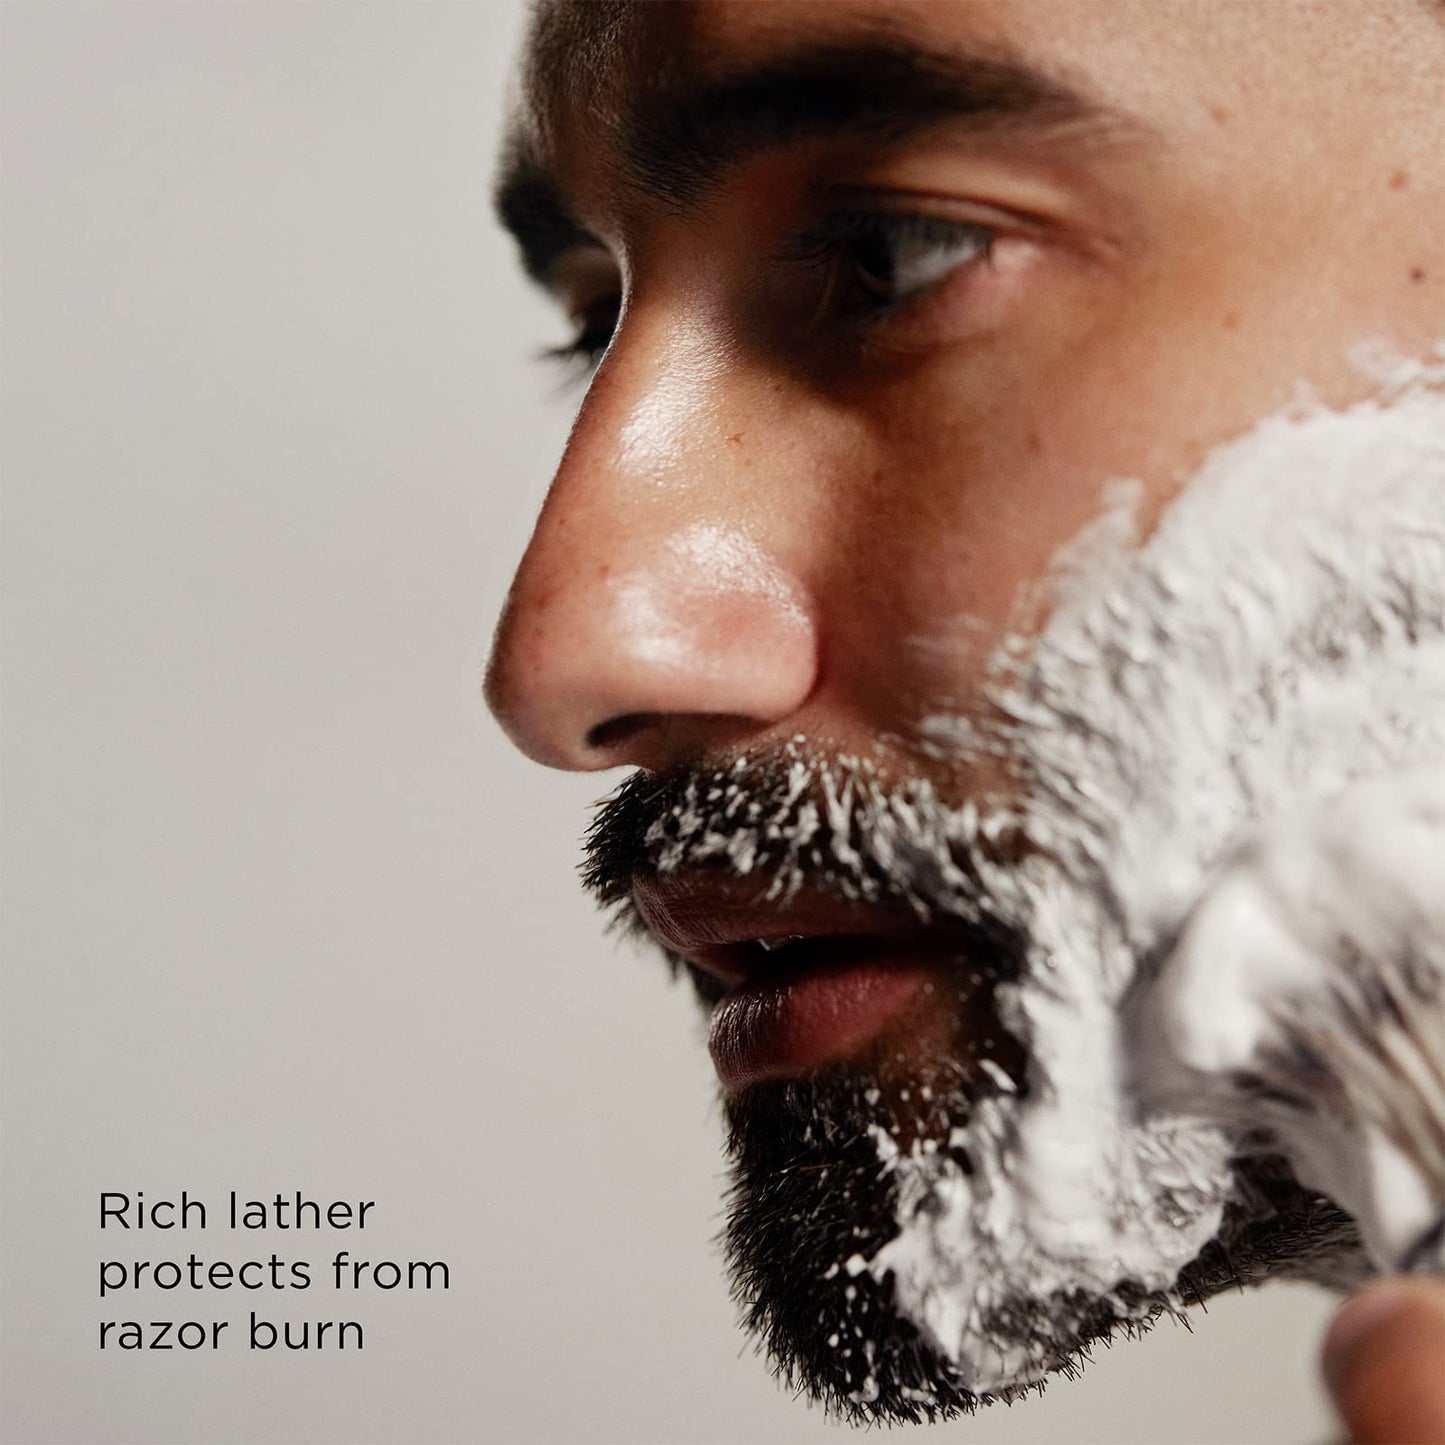 The Art of Shaving Shaving Cream for Men - Shaving Cream Mens Beard Care, Protects Against Irritation and Razor Burn, Clinically Tested for Sensitive Skin, Lavender, 2.5 Fl Oz